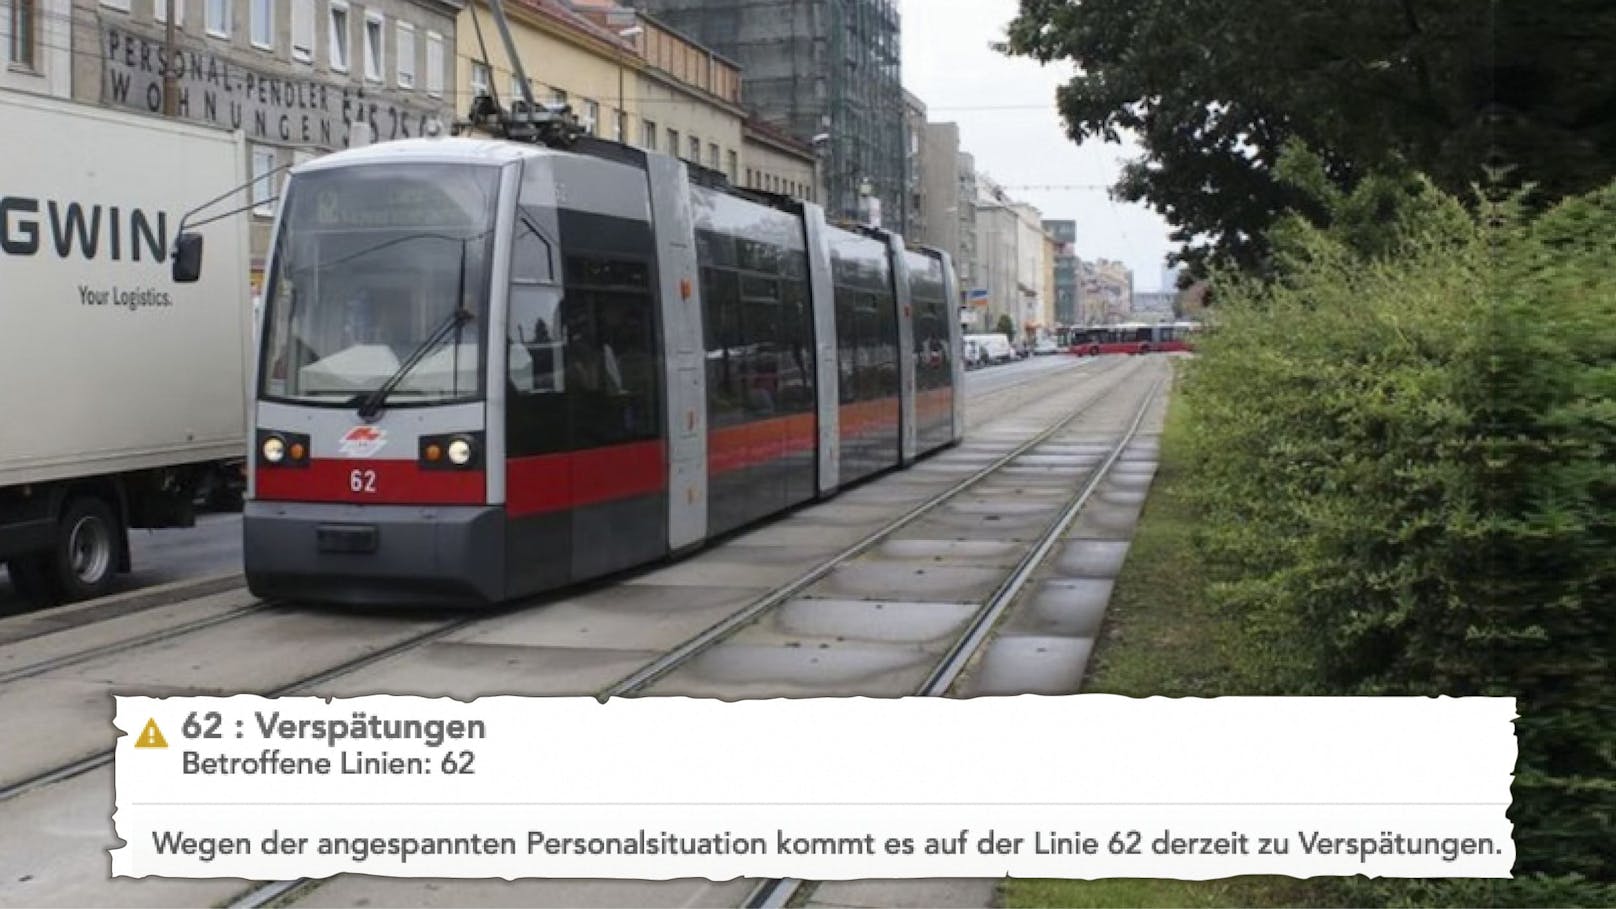 Einfach ehrlich: Seit kurzem geben die Wiener Linien die "angespannte Personalsituation" als Verspätungsgrund an. Am Dienstag traf es die Linie 62.